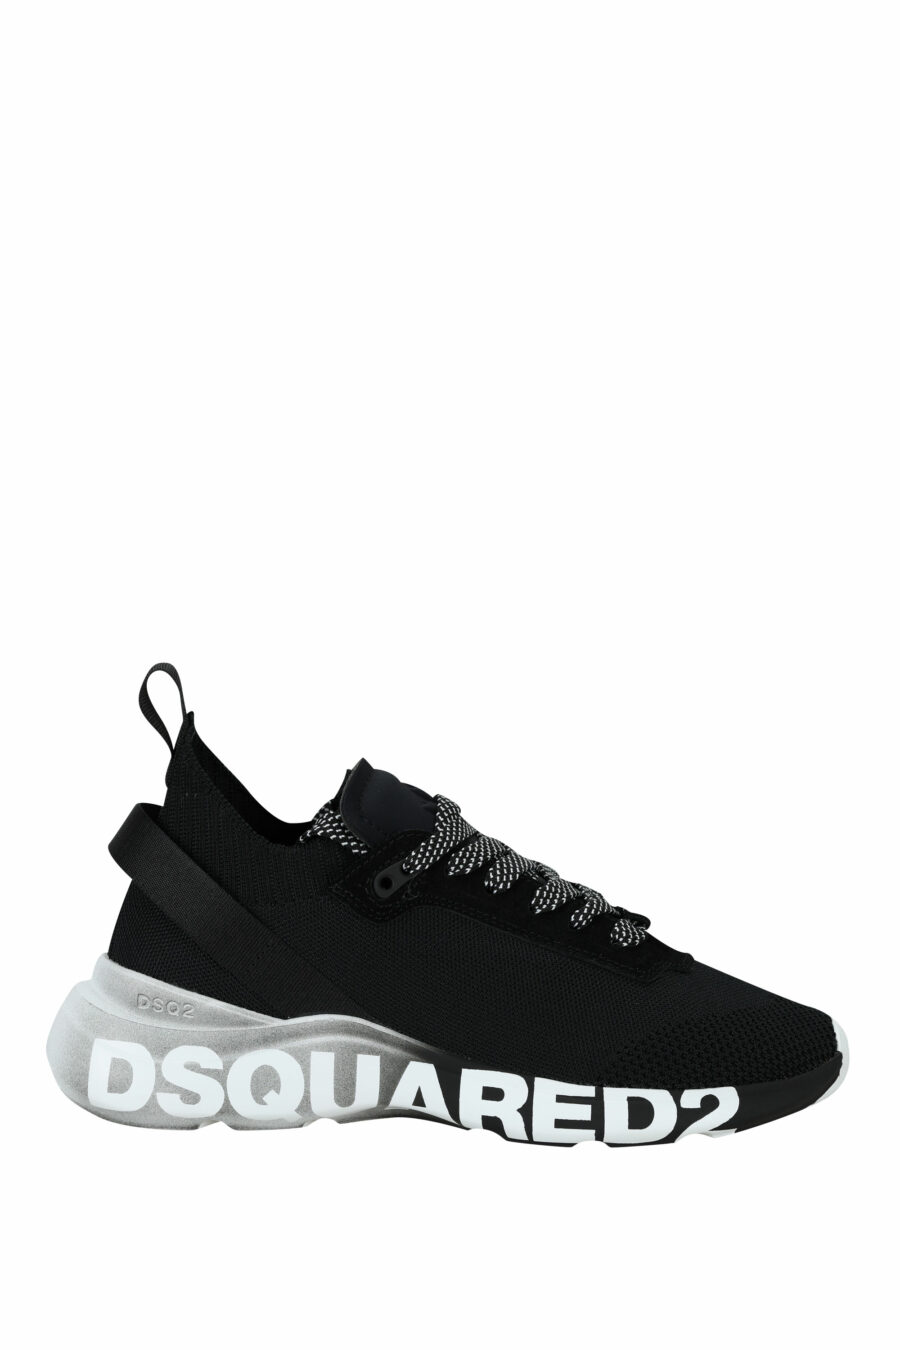 Zapatillas negras "fly" con logo negro en suela blanca - 8055777324769